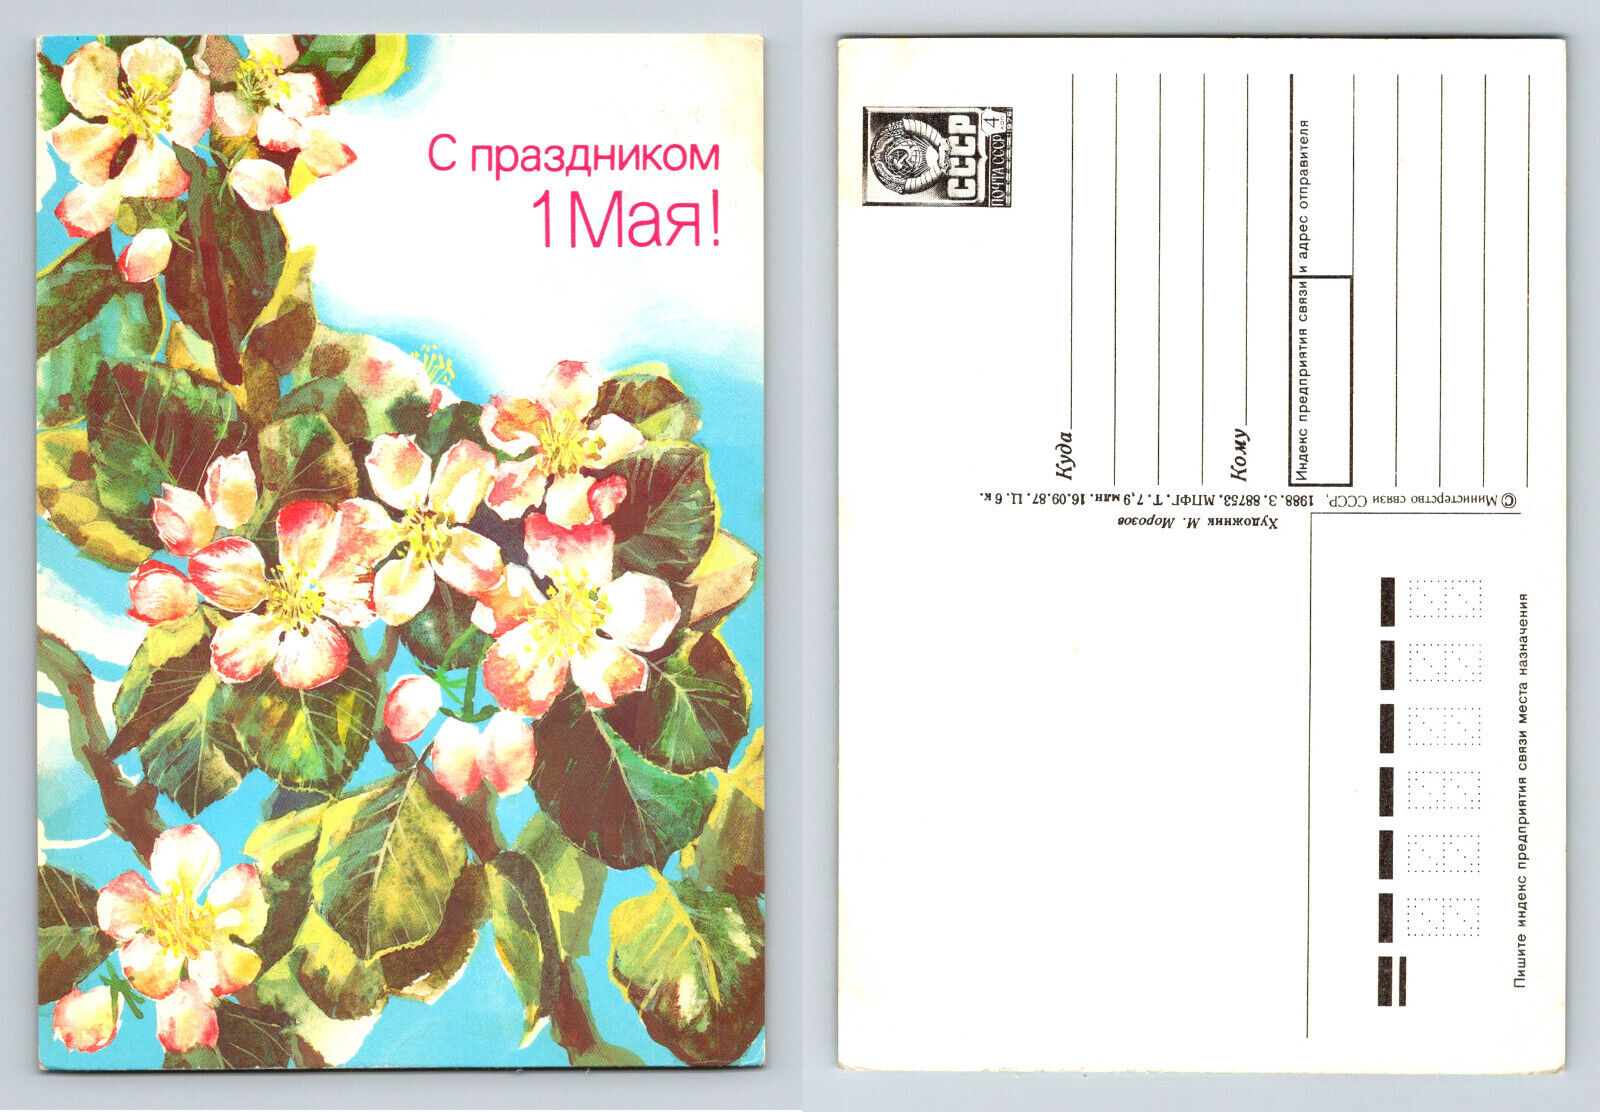 С праздником 1 Мая May Day Soviet Era Morozov Postcard 1988 USSR